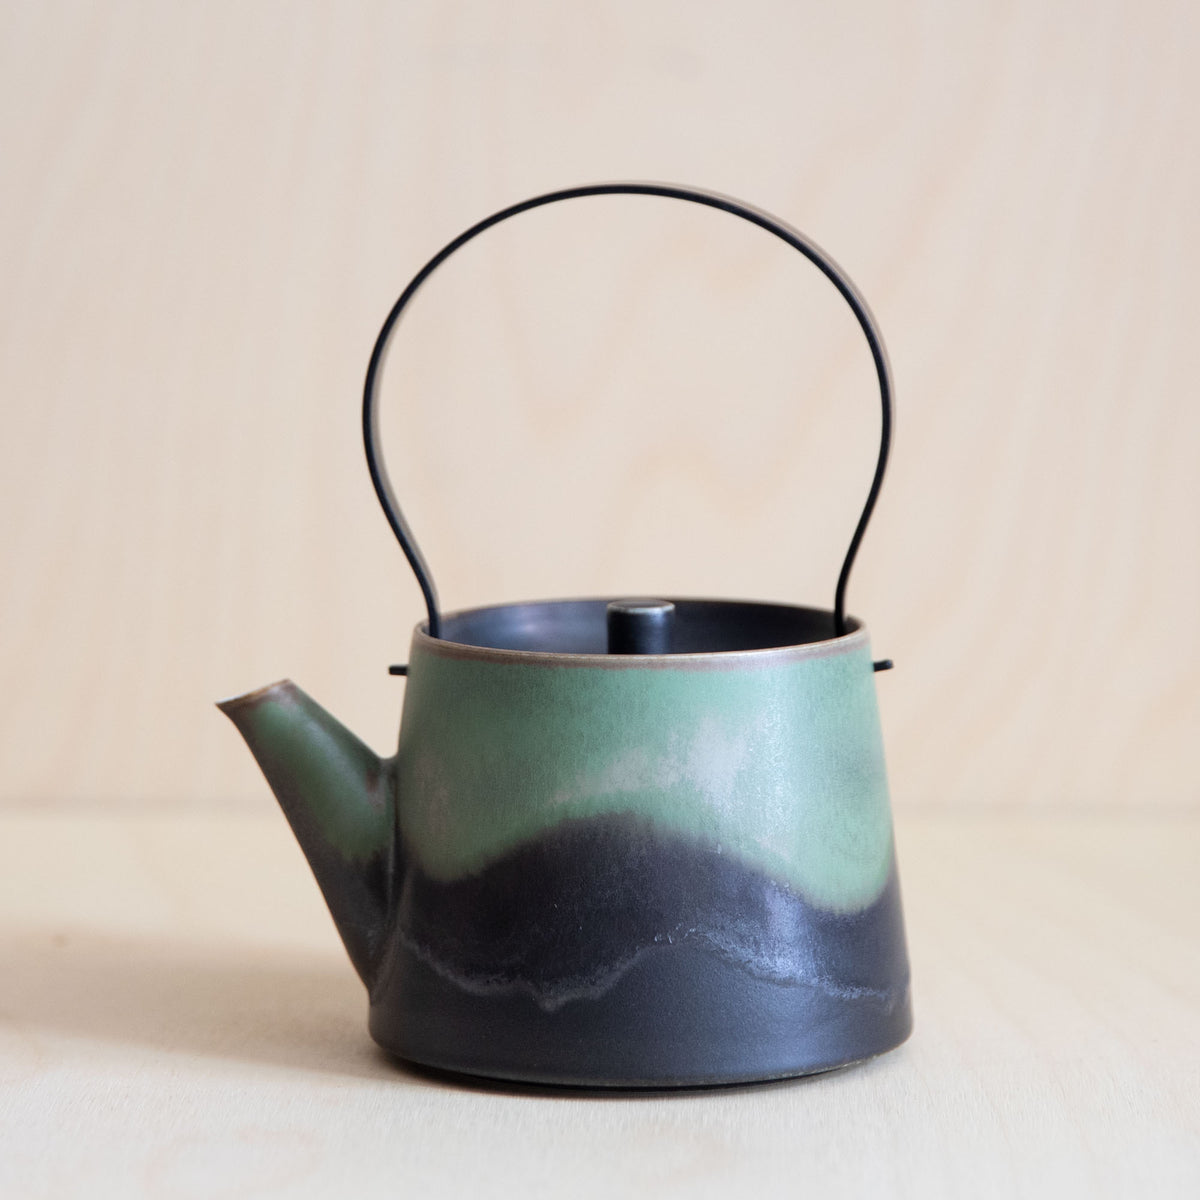 Ceramic Teaware